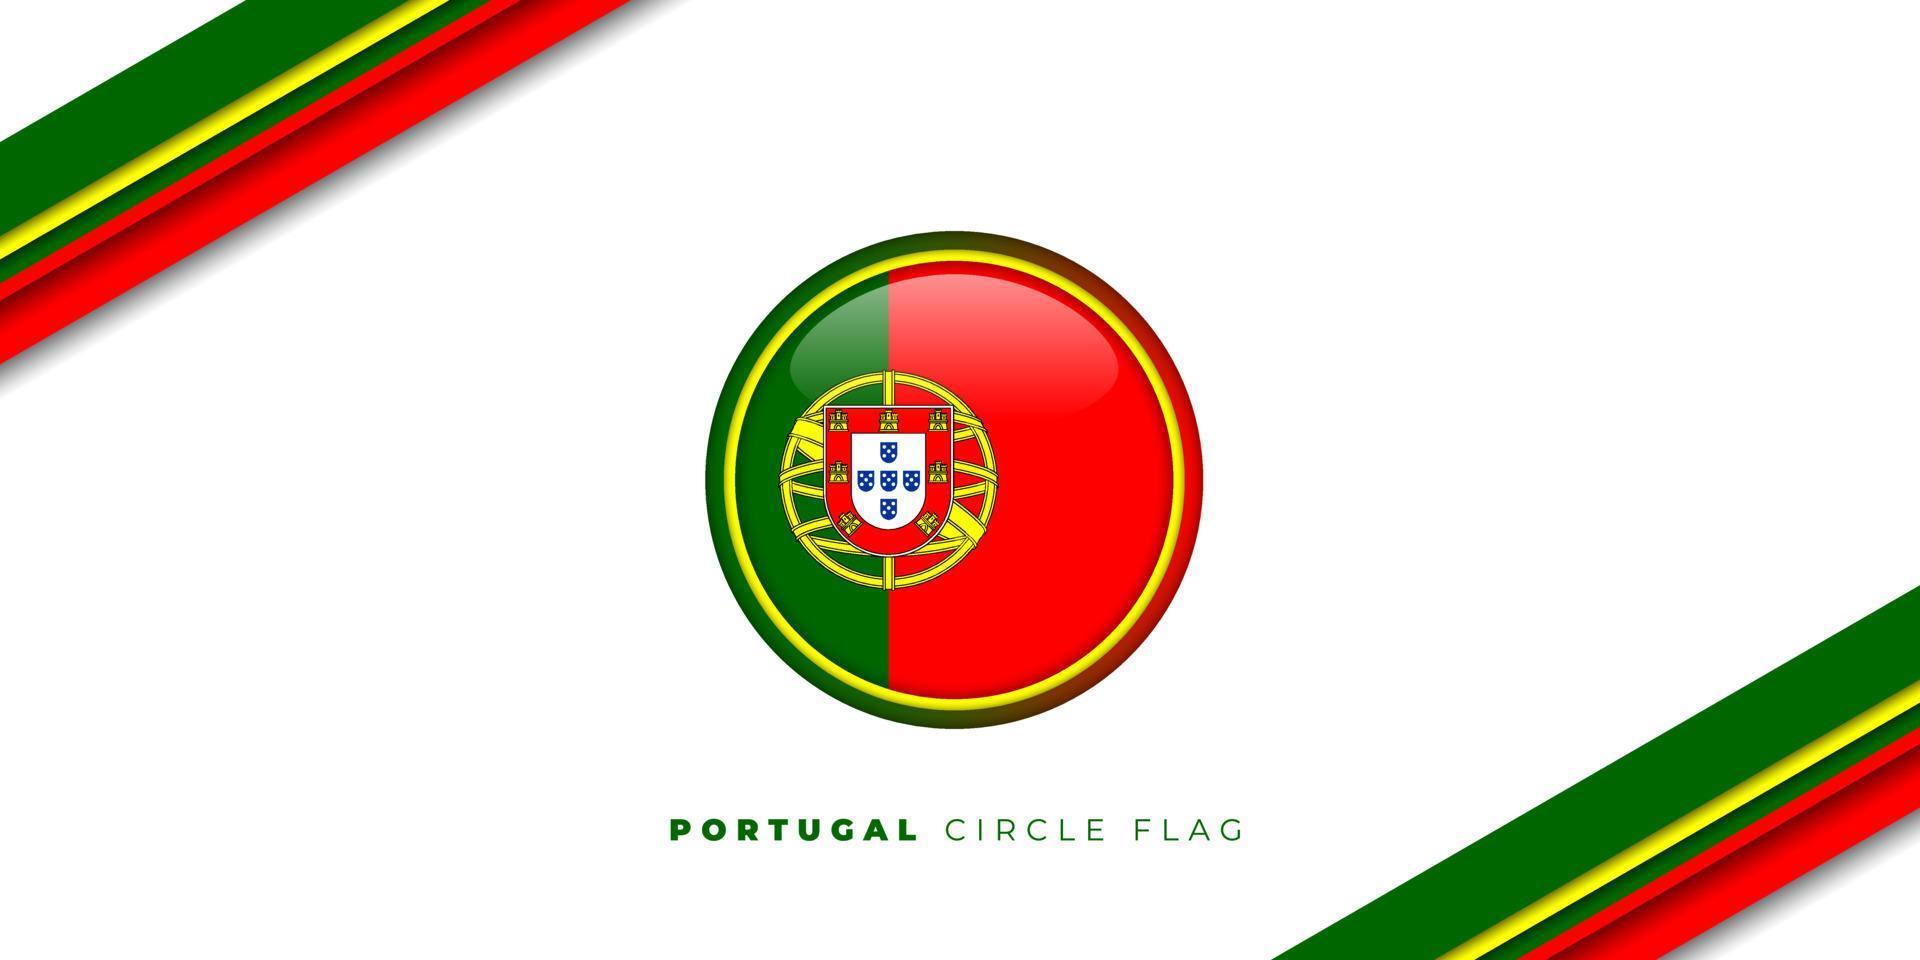 Bộ Công trình cho thấy cờ của Bồ Đào Nha chỉ đơn giản là một vòng tròn màu đỏ trên nền màu xanh lá cây, nhưng chúng tôi có tất cả những hình ảnh chi tiết của biểu tượng quốc gia này. Với vẻ đẹp tinh tế và trang trọng, chúng tôi cam kết sẽ mang đến cho bạn những bức ảnh vector chất lượng cao.